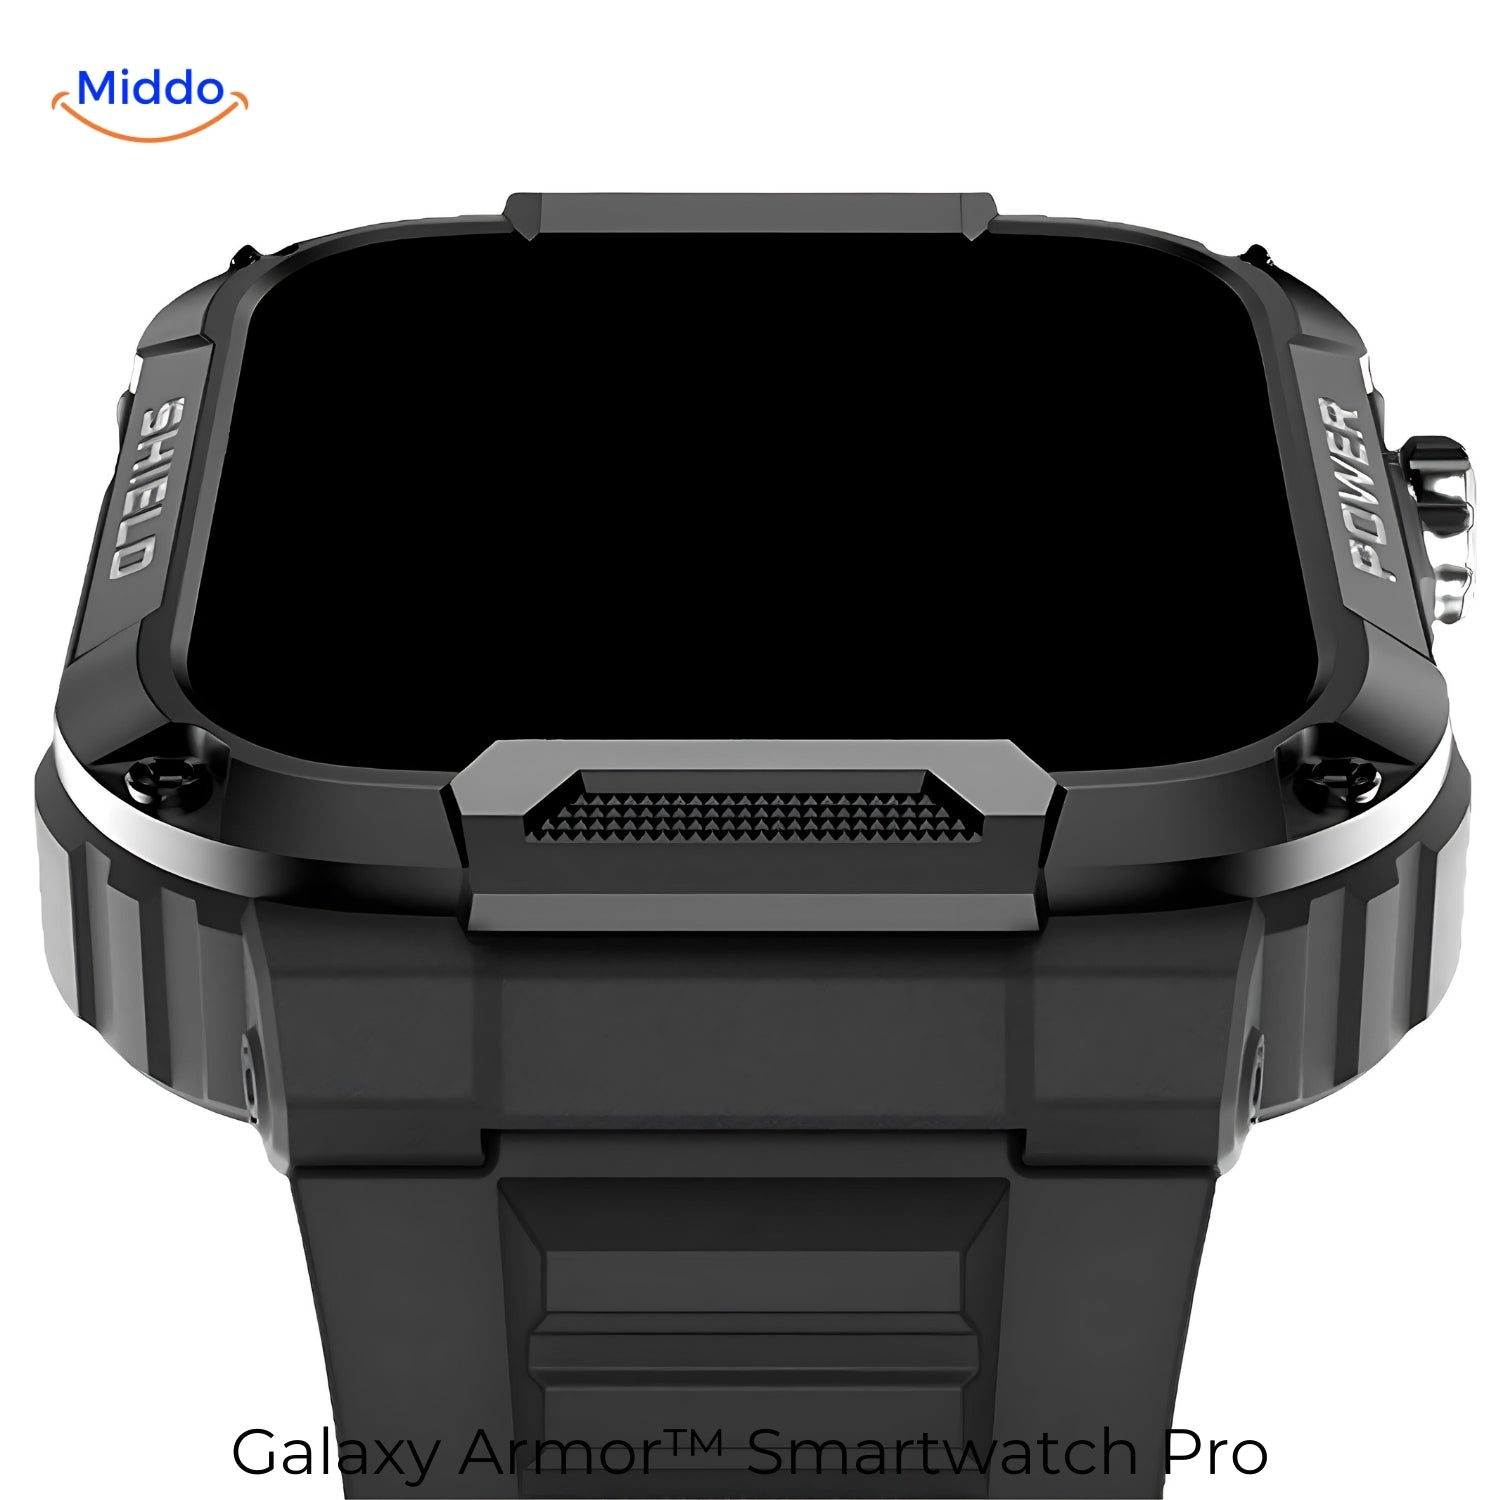 Galaxy Armor Smartwatch Pro voor IOS en Android zwart display www.middo.nl